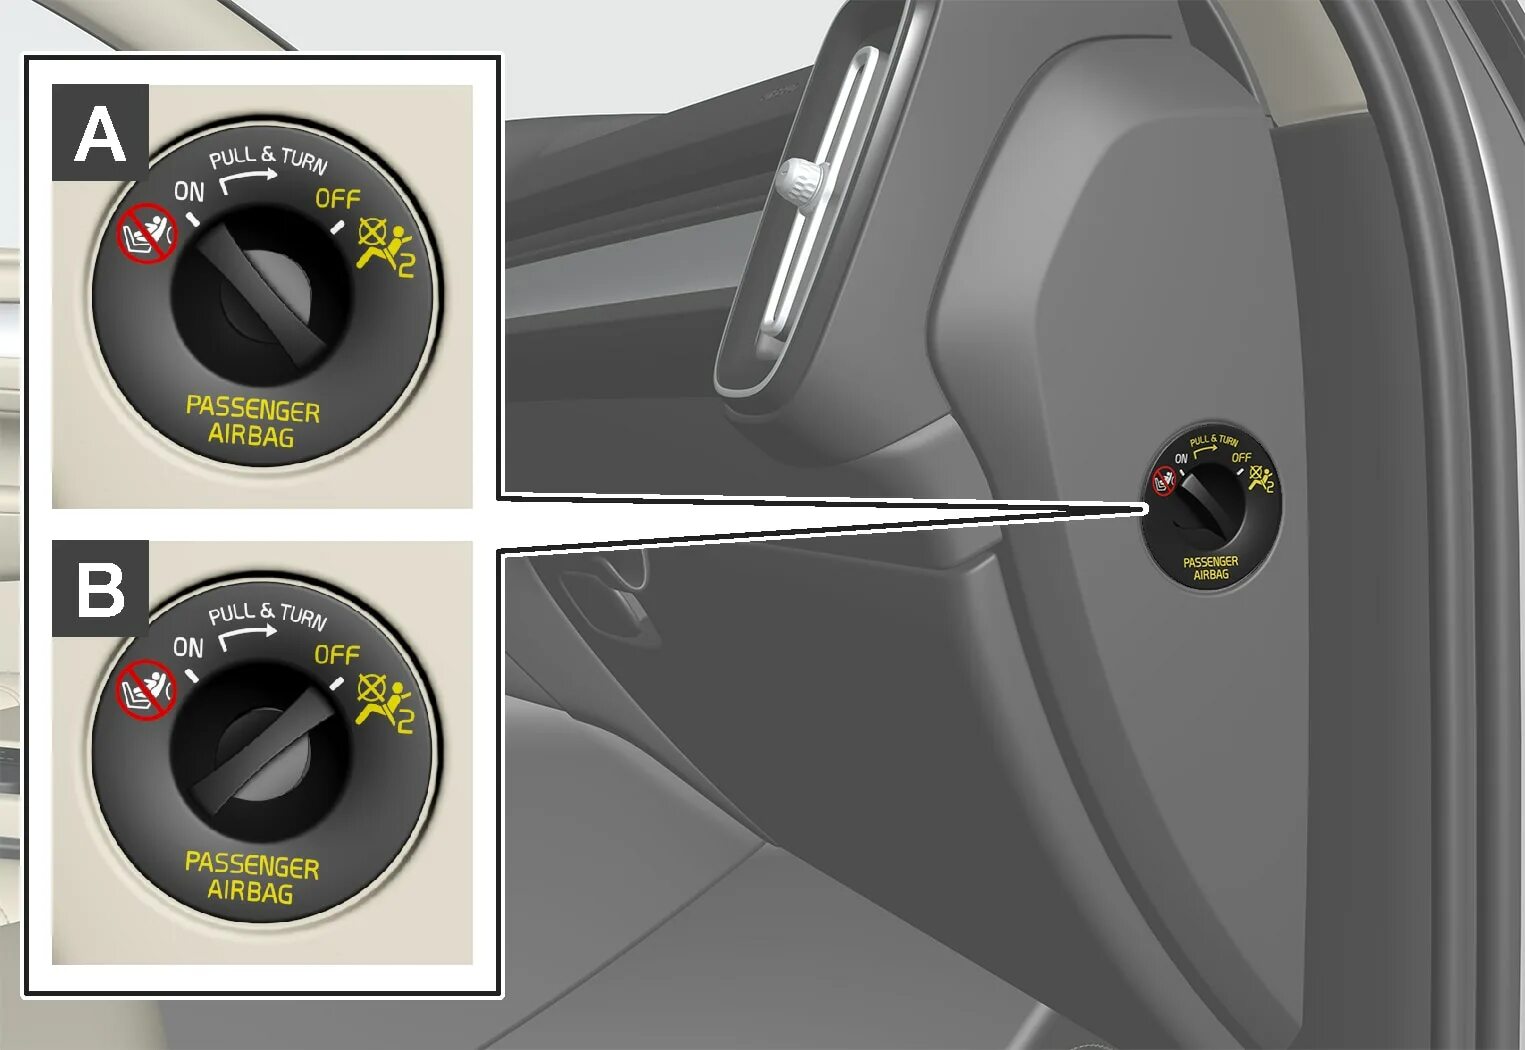 Airbag off. Кнопка Passenger airbag BMW. Индикатор отключенной подушки безопасности переднего пассажира. Отключить подушку безопасности. Как отключить подушку безопасности.